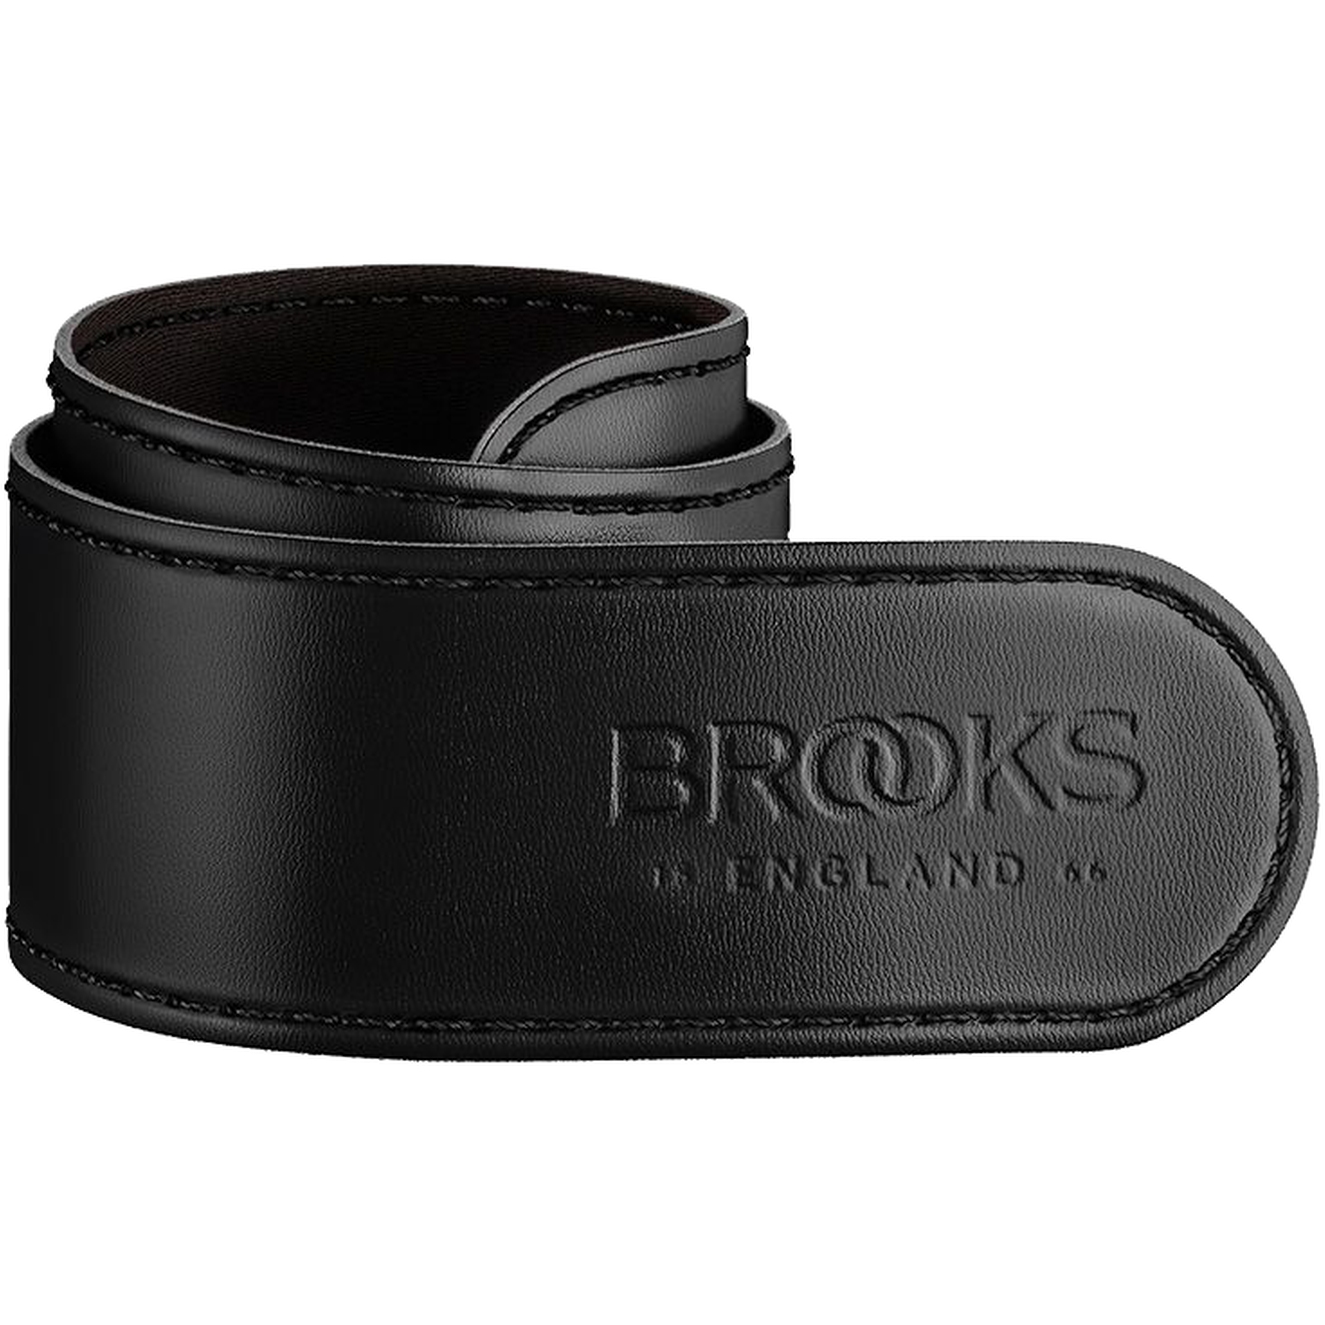 Produktbild von Brooks Trouser Strap Hosenbeinschutz - Schwarz